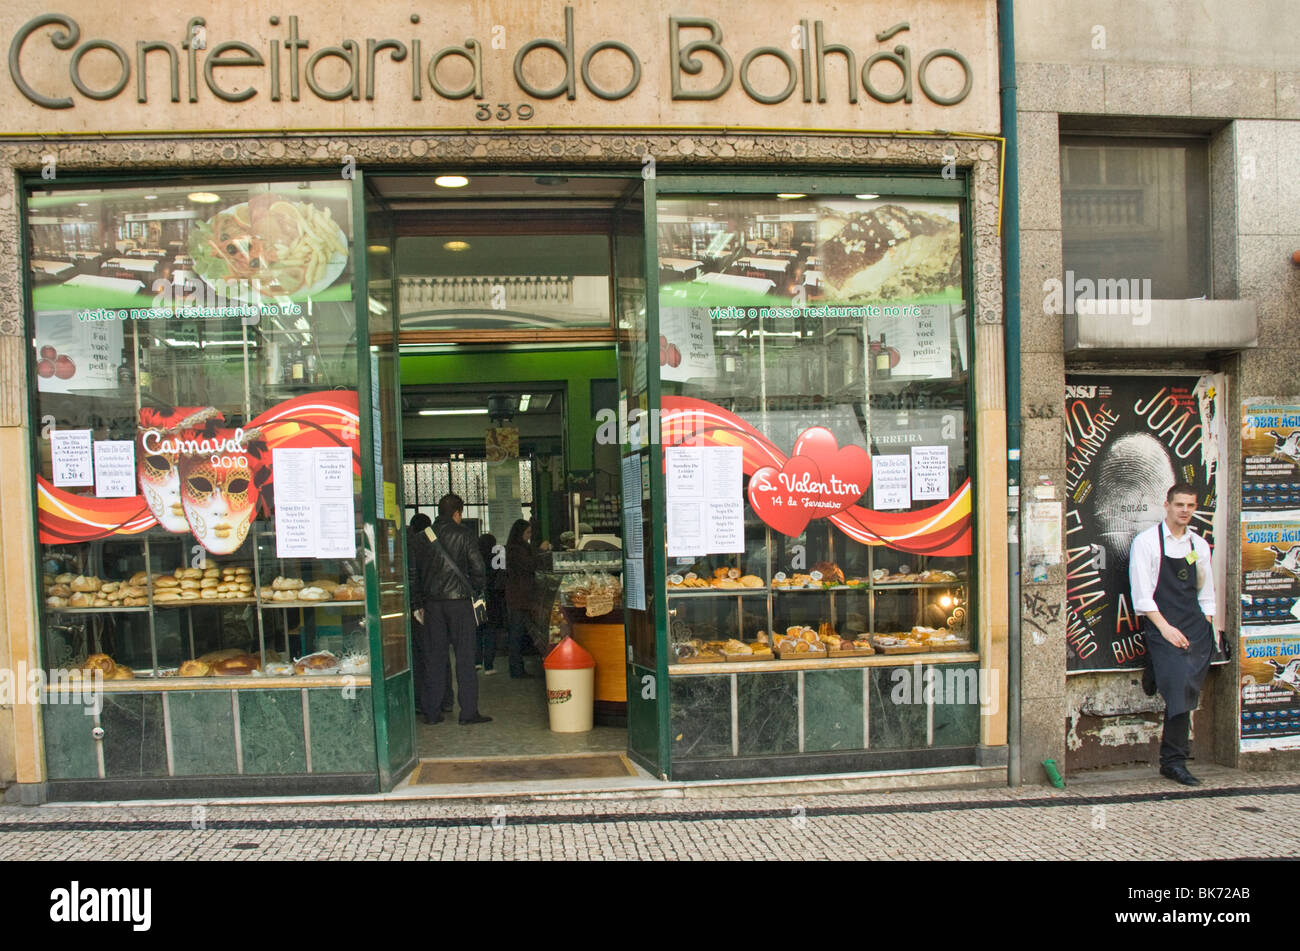 Confeitaria do Bolhão, Porto, Portugal, Europe Stock Photo